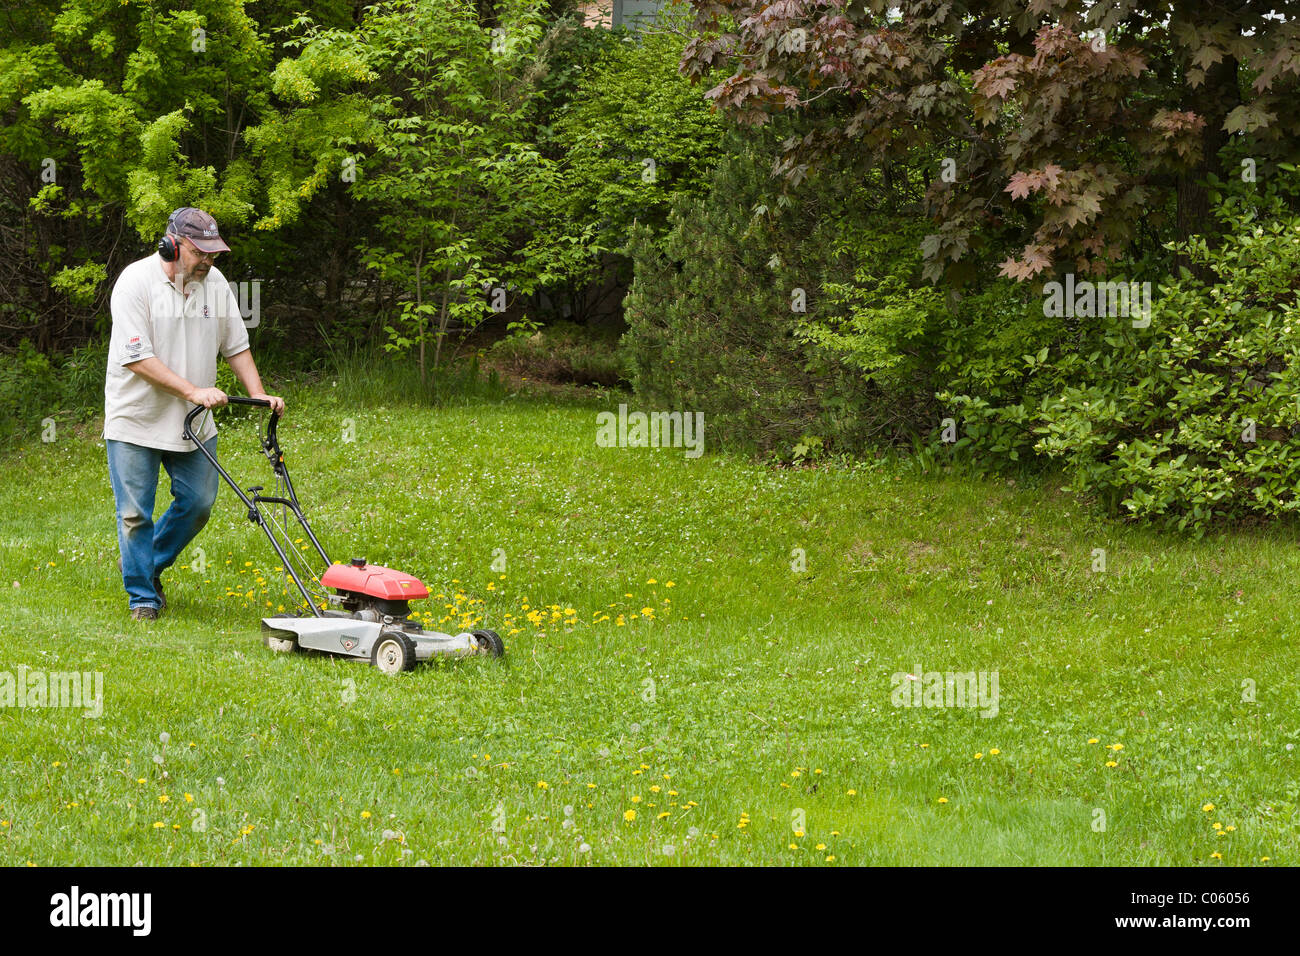 Frühling, Rasen schneiden schieben. Ein Mann mäht seinen üppigen grünen  Rasen mit einem gasbetriebenen Rasenmäher. Er trägt Gehörschutz  Stockfotografie - Alamy